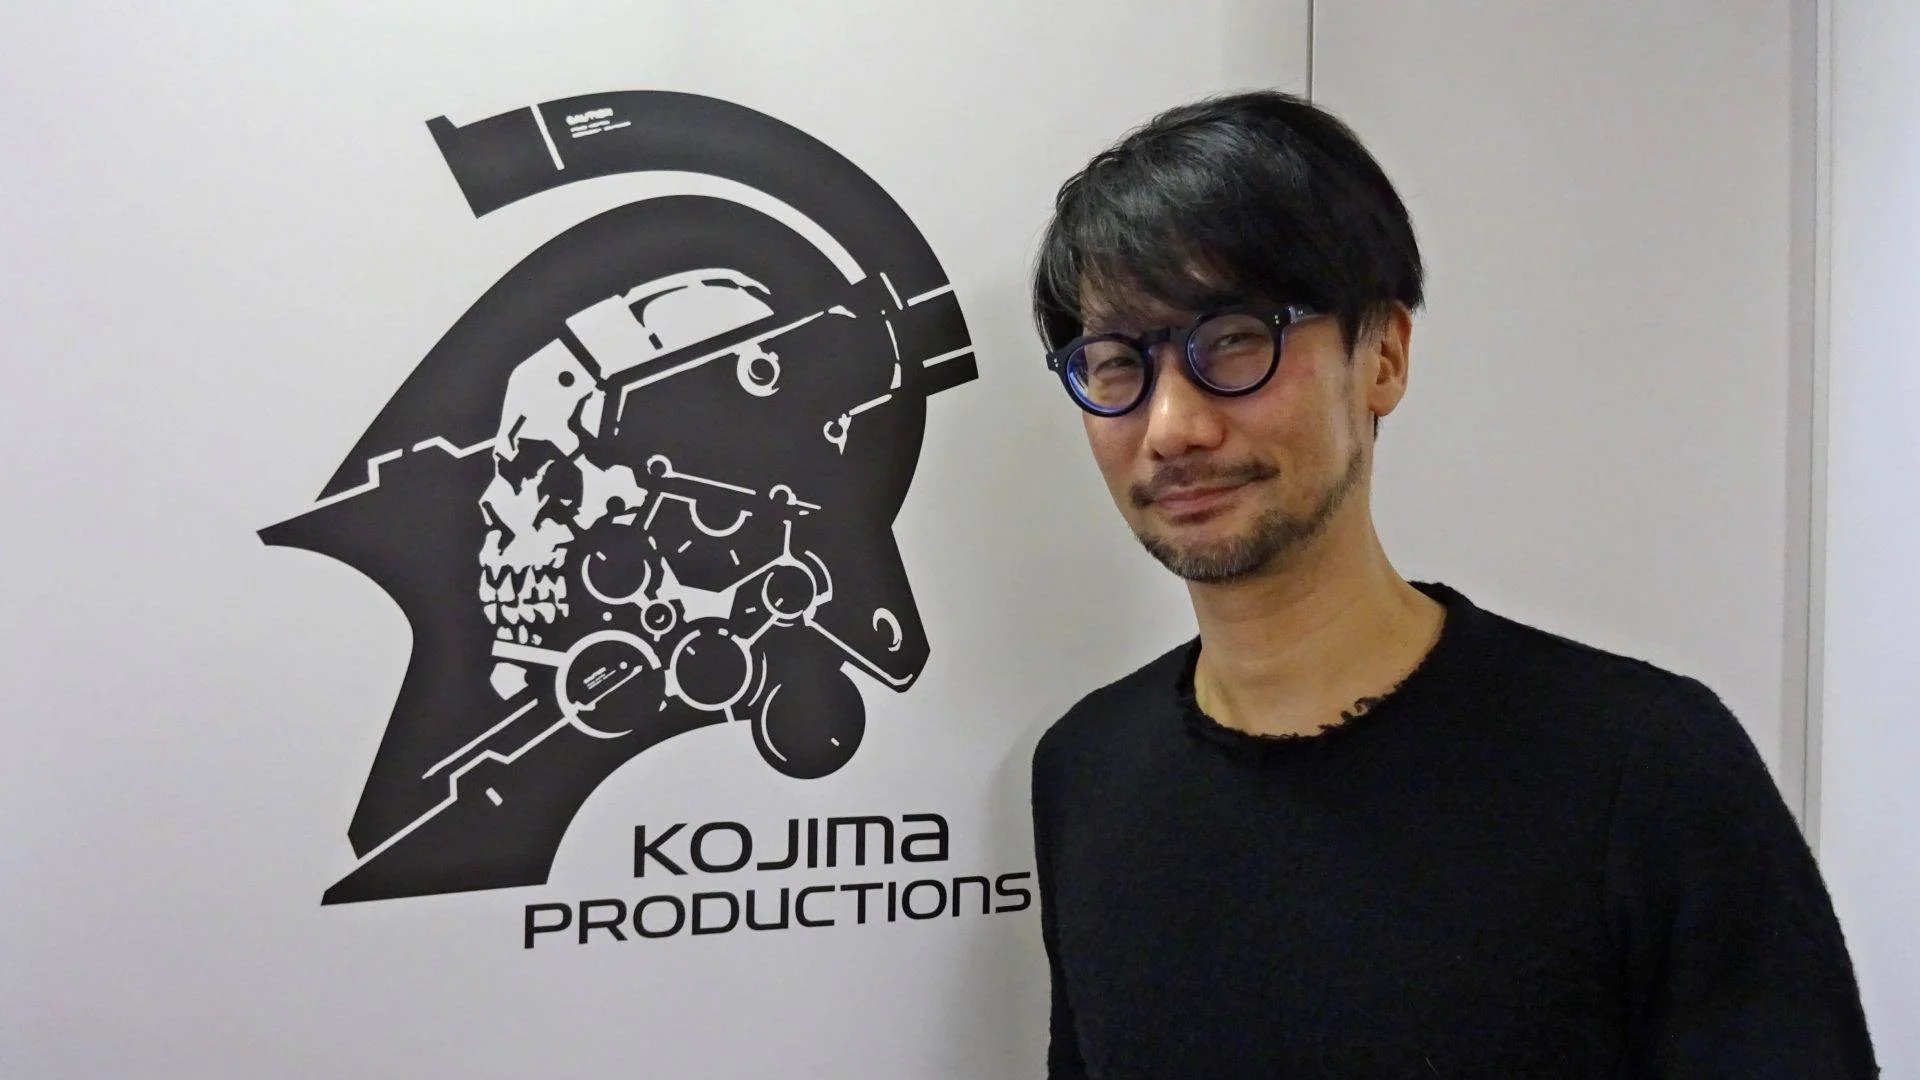 Kojima Productions исполнилось 5 лет. В честь этого студия готовит «приятные сюрпризы»  - изображение обложка